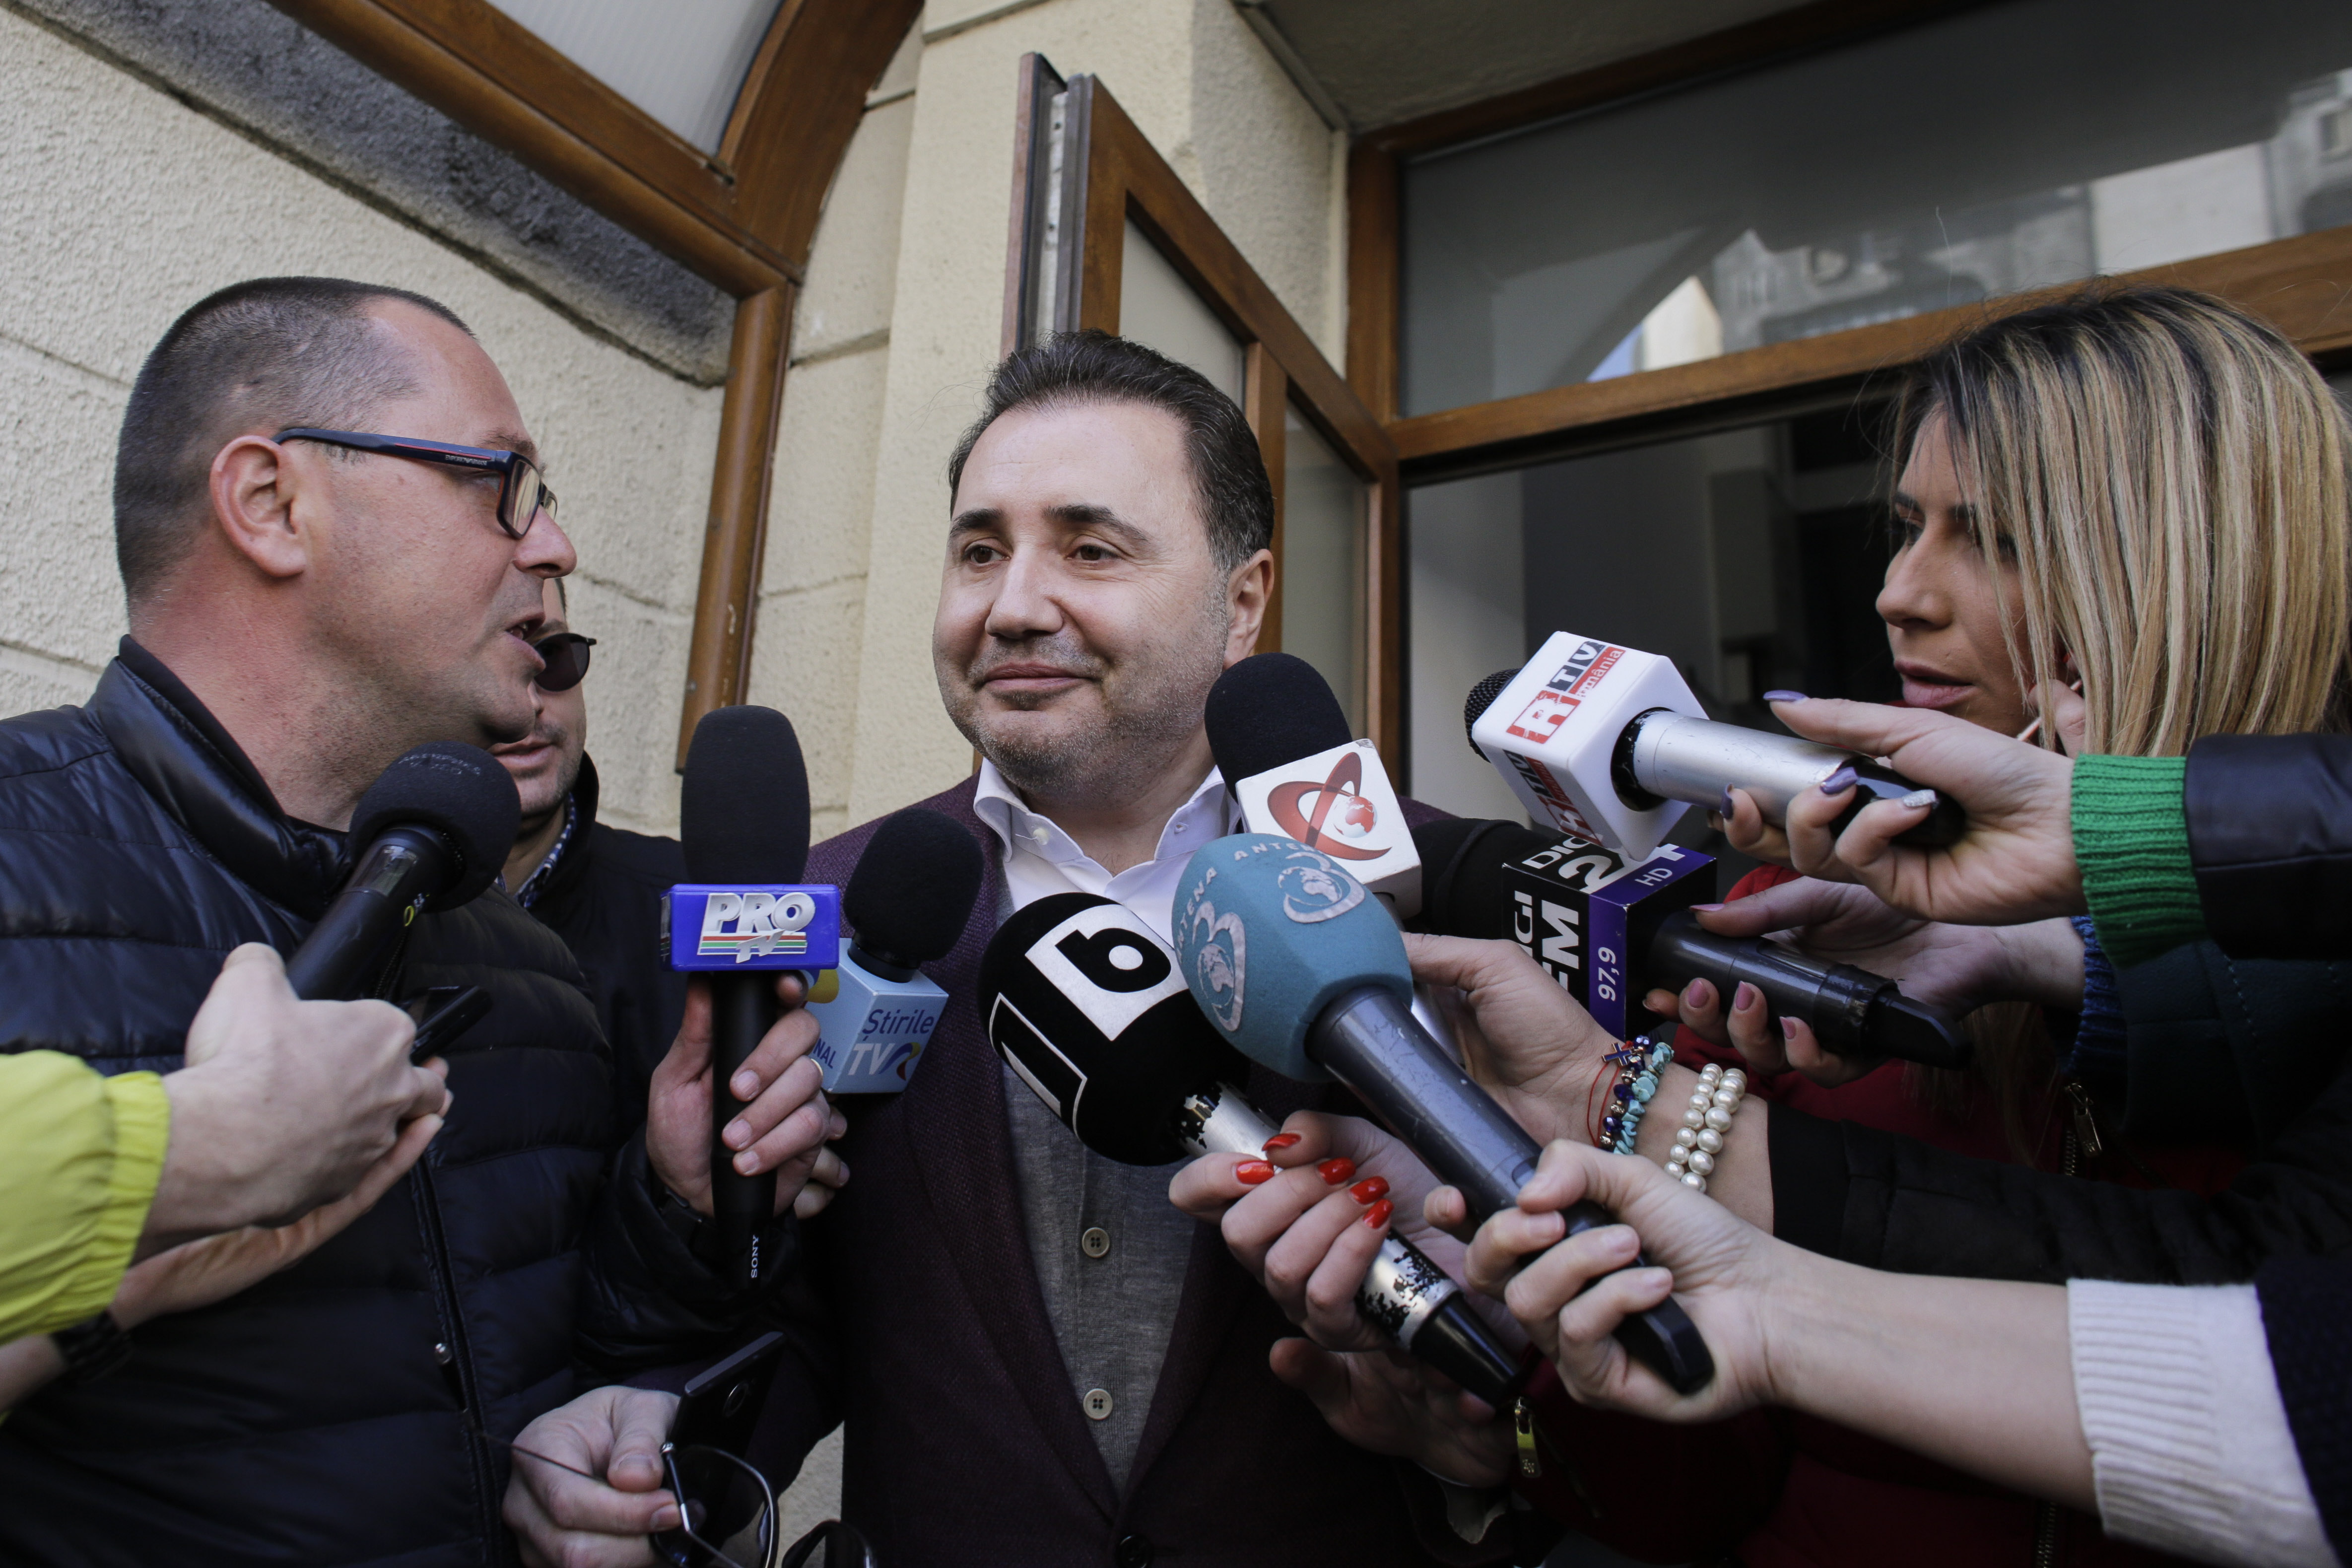 Fostul deputat PSD Cristian Rizea ar fi obținut ilegal cetățenia R. Moldova. Răspunsul autorităților